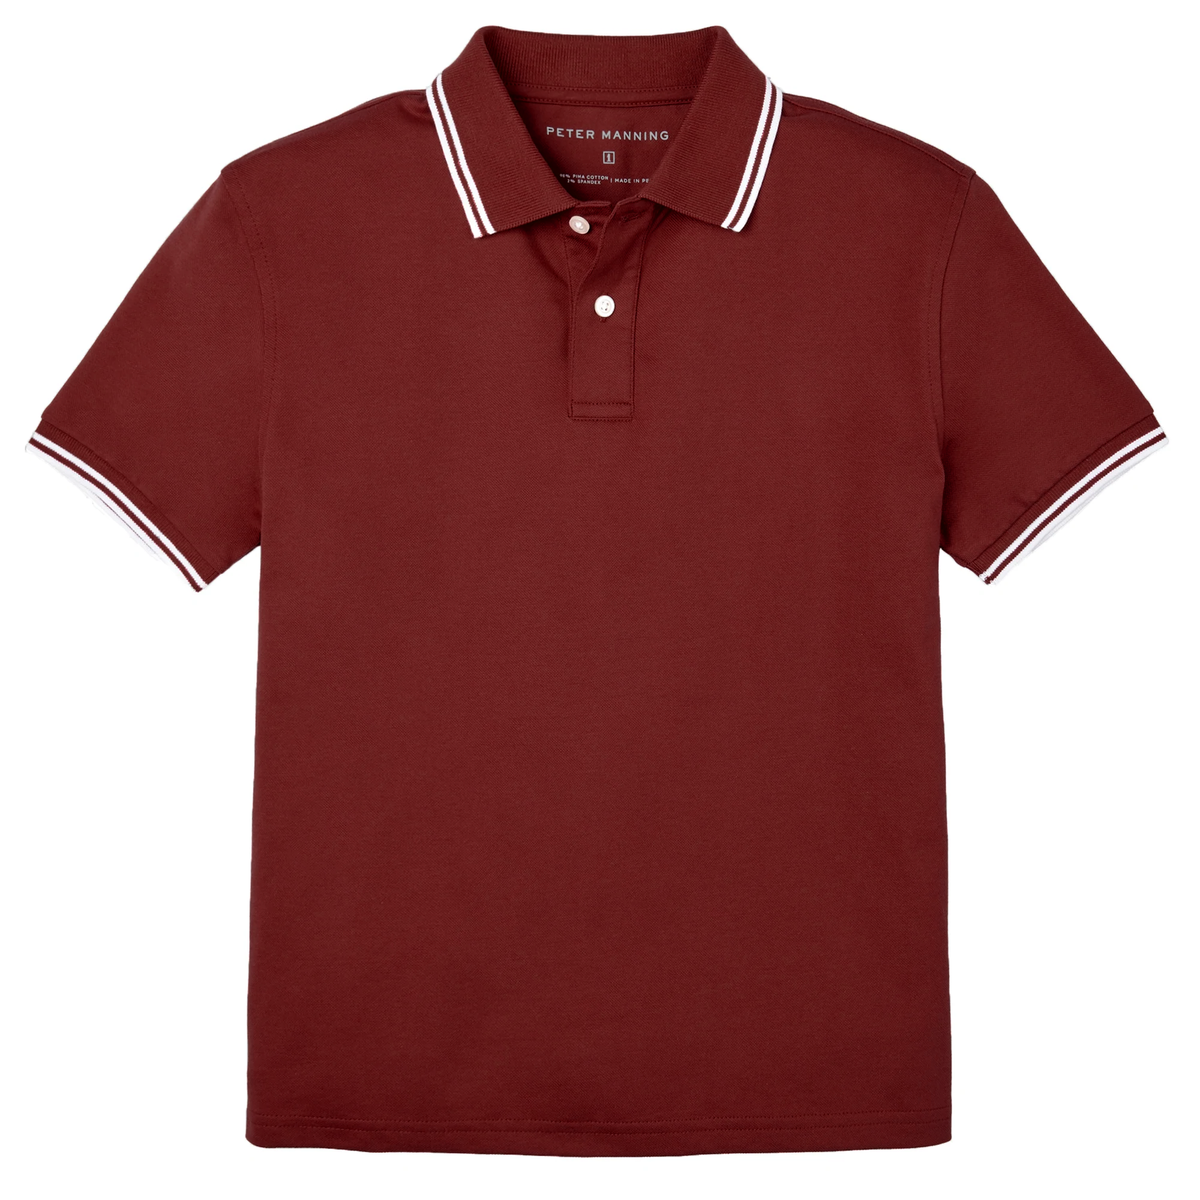 Burgundy Tipped Polo Shirt for Short Men